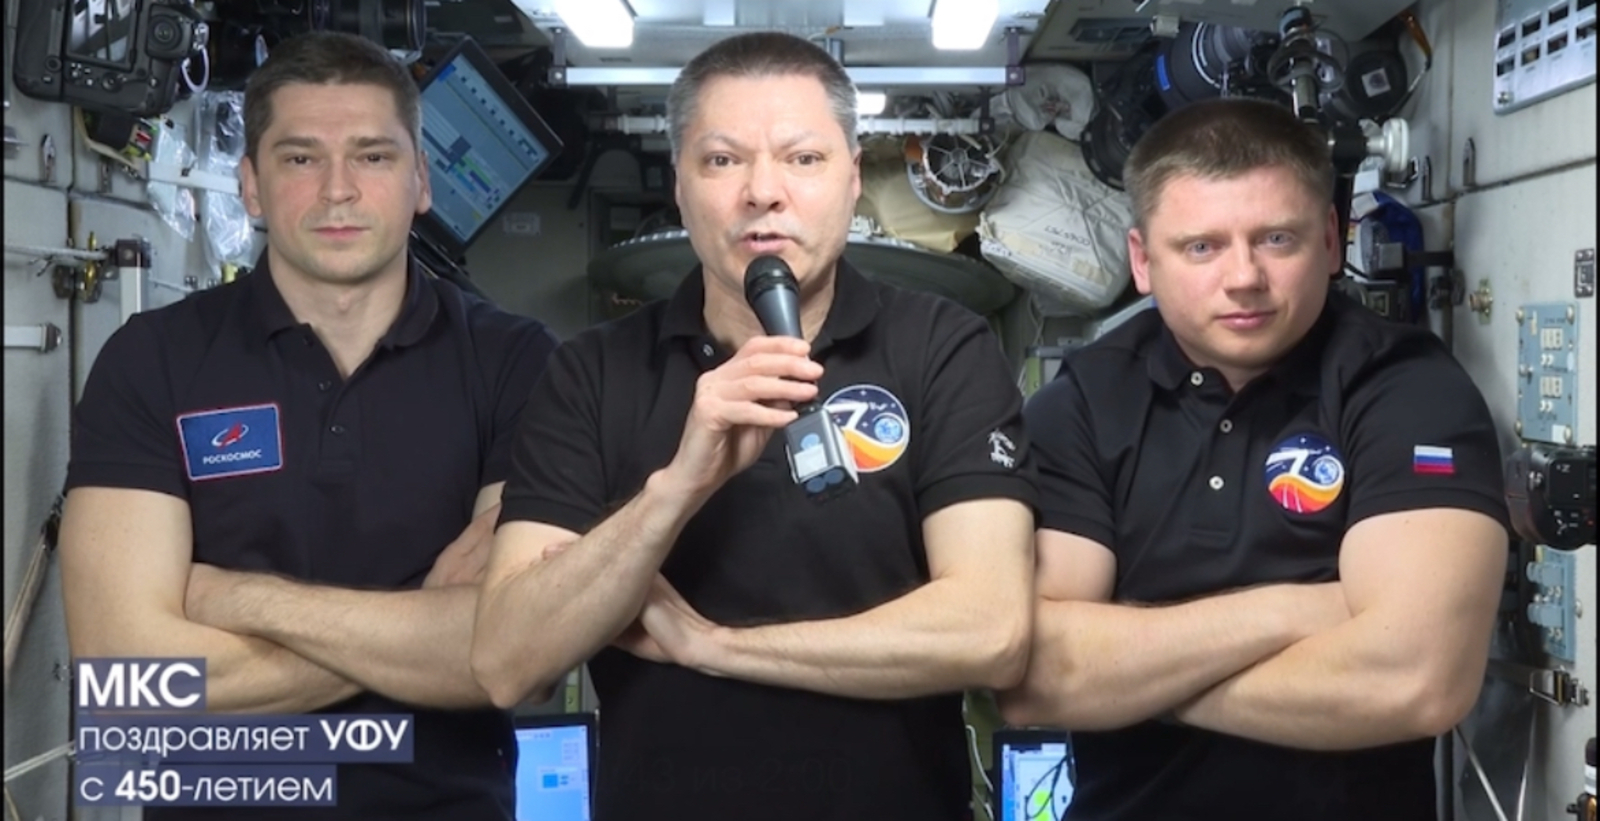 Космонавты поздравили столицу Башкирии с предстоящим 450-летием прямо из космоса